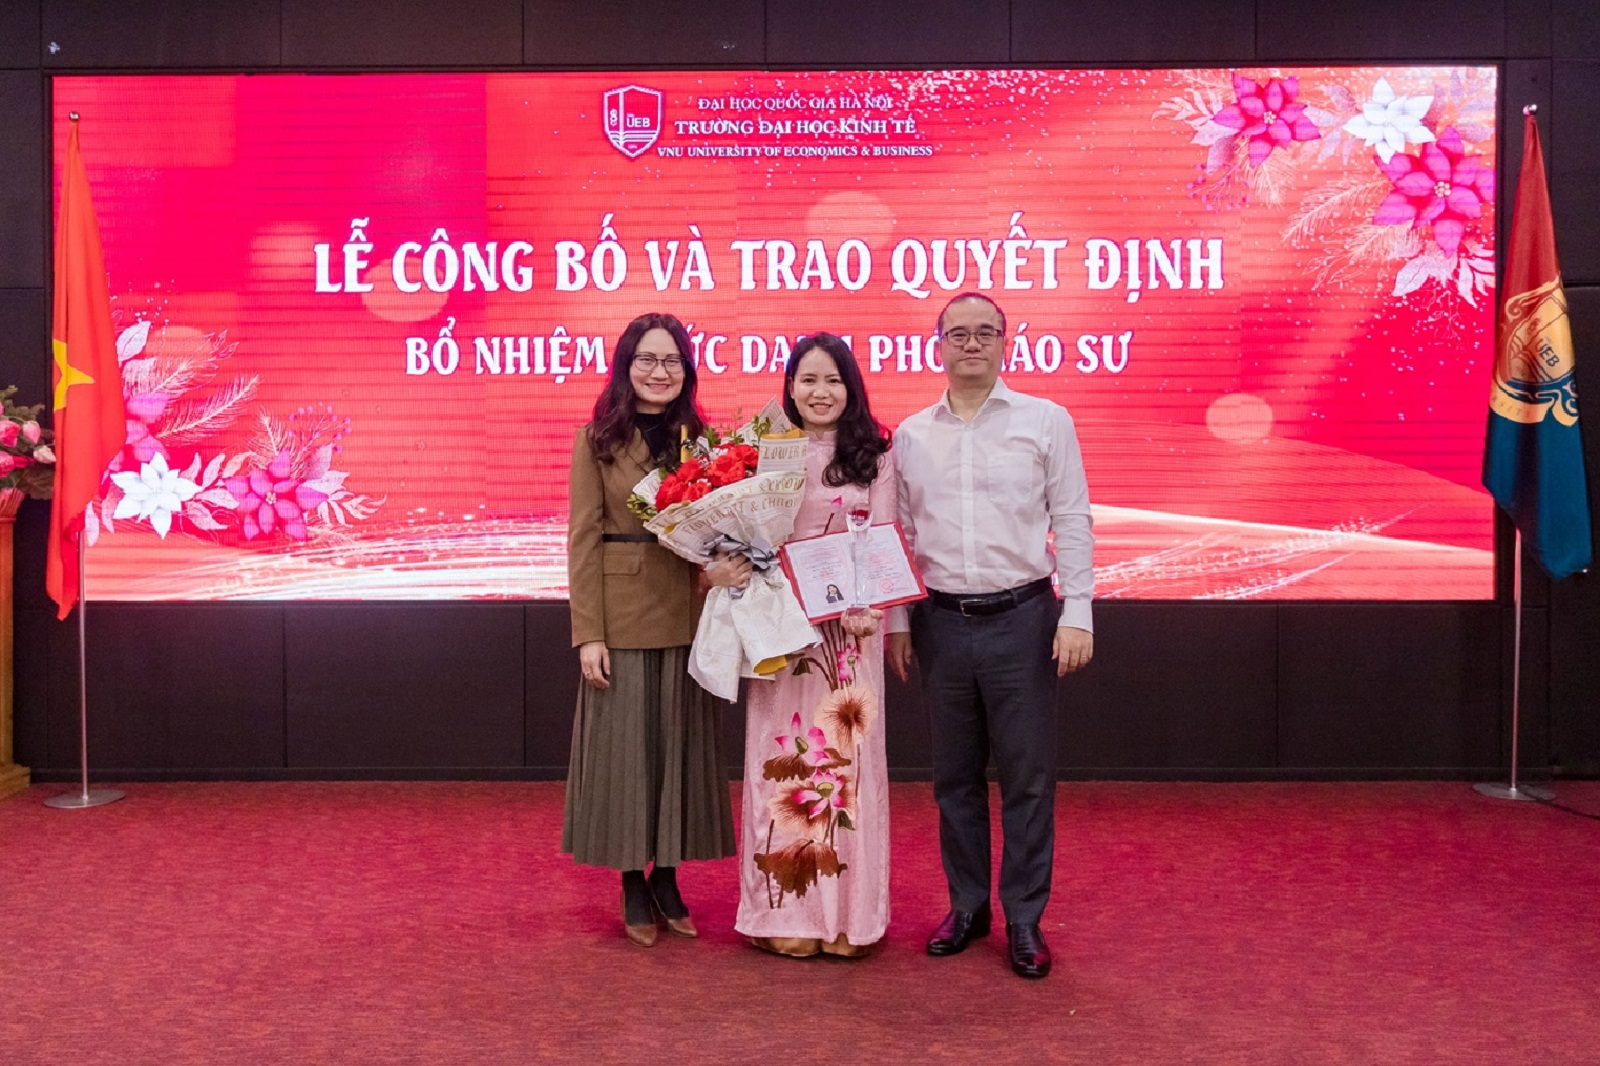 Chúc mừng PGS.TS Vũ Thanh Hương nhận chức danh Phó Giáo sư ngành Kinh tế